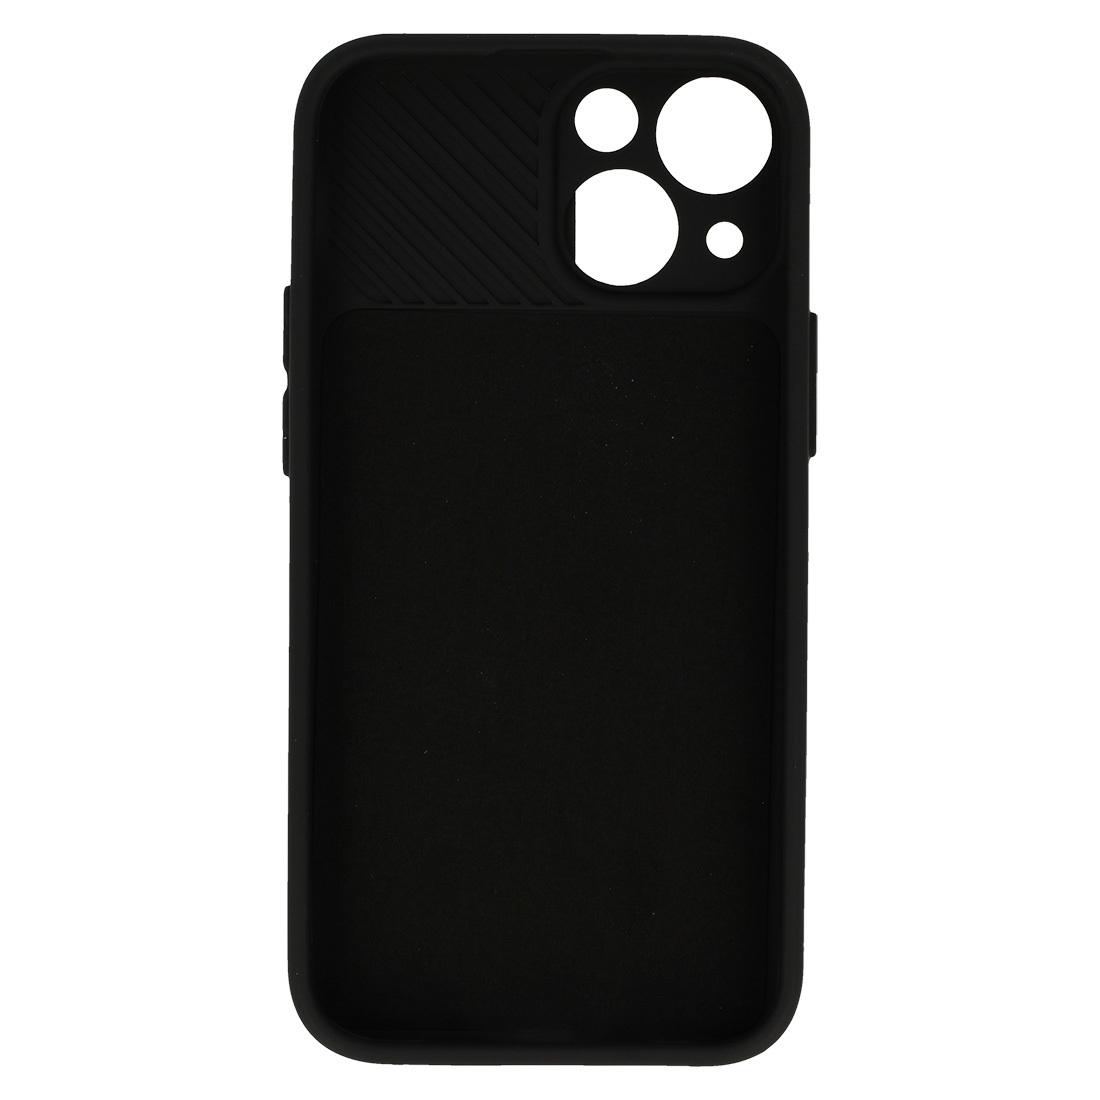 Pokrowiec etui z elastycznego TPU Camshield Soft Case czarne APPLE iPhone 11 / 5